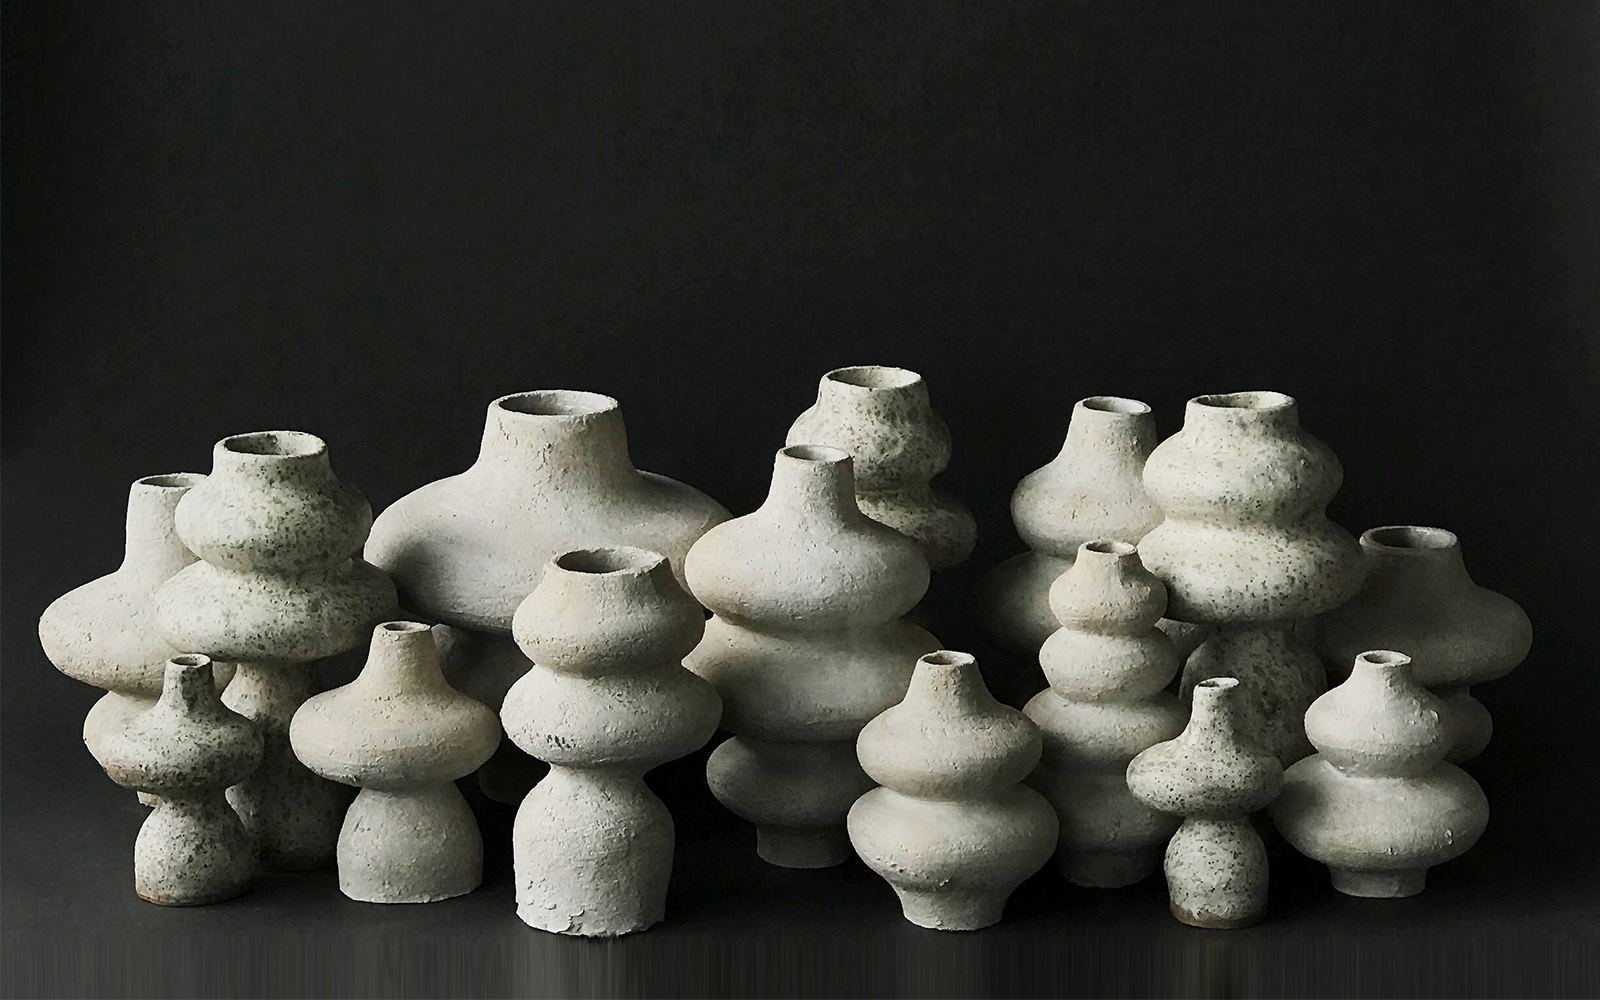 Ceramics Classes - ICA